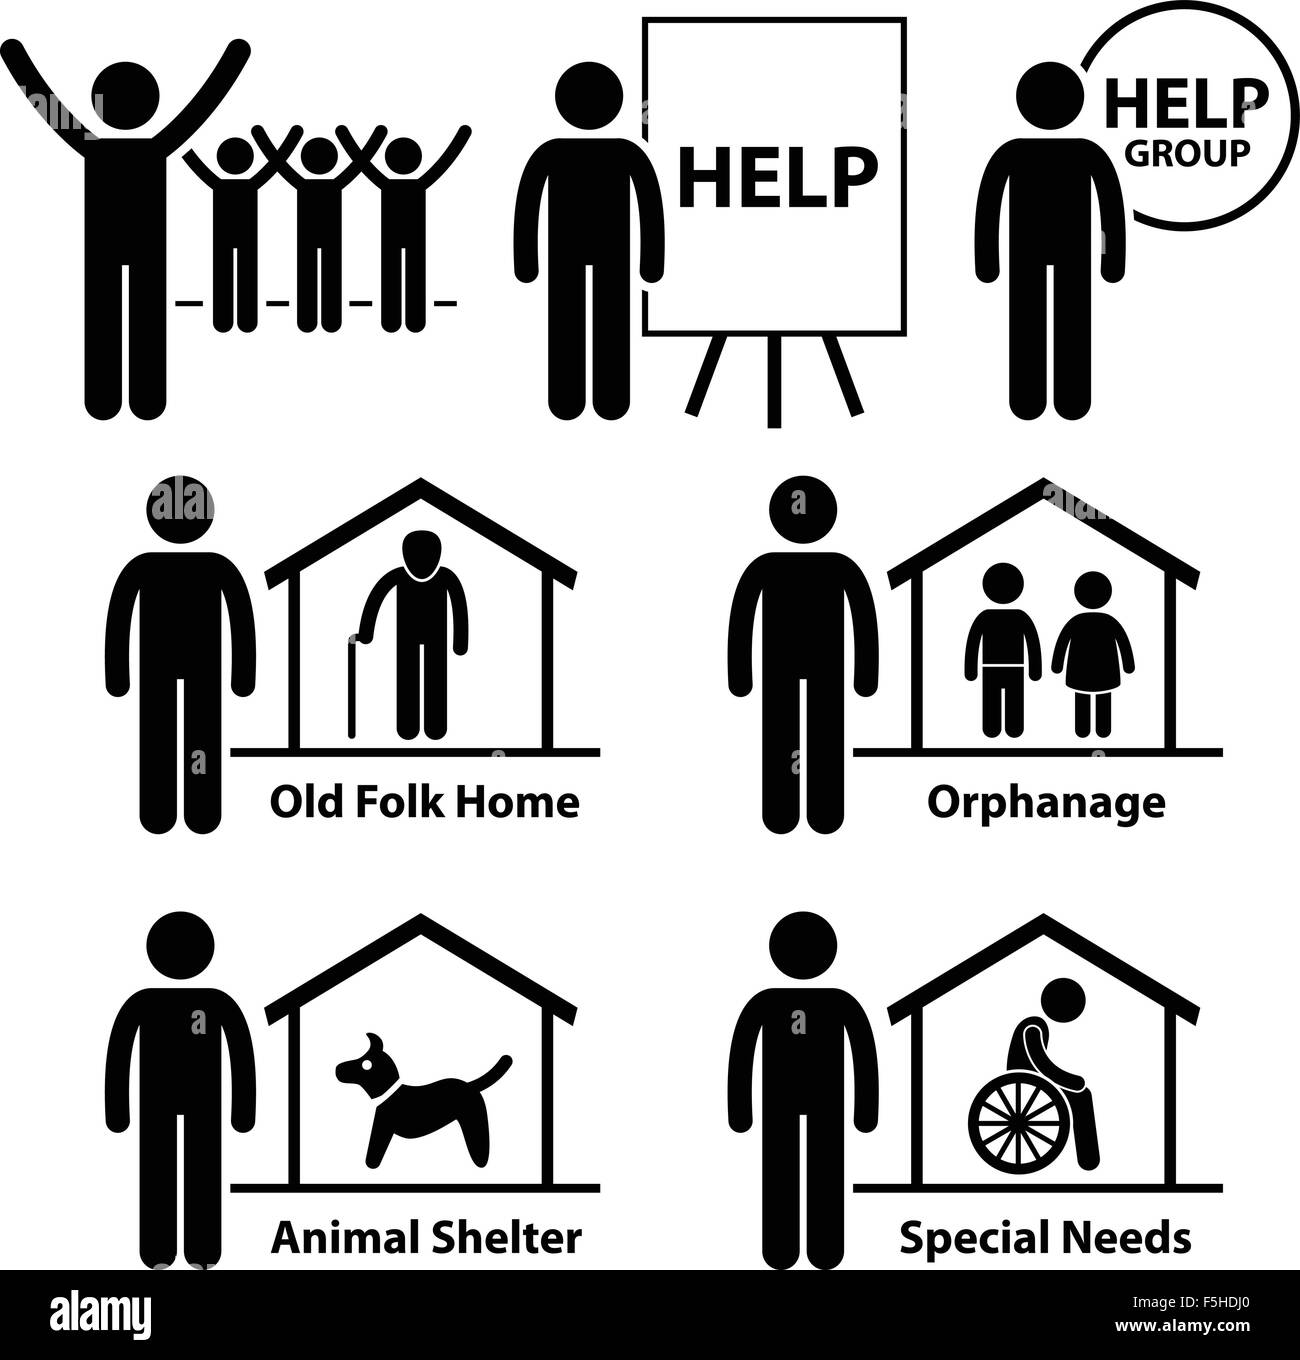 Les responsabilités de services sociaux sans but lucratif de bénévoles de la Fondation Stick Figure Icône pictogramme Illustration de Vecteur